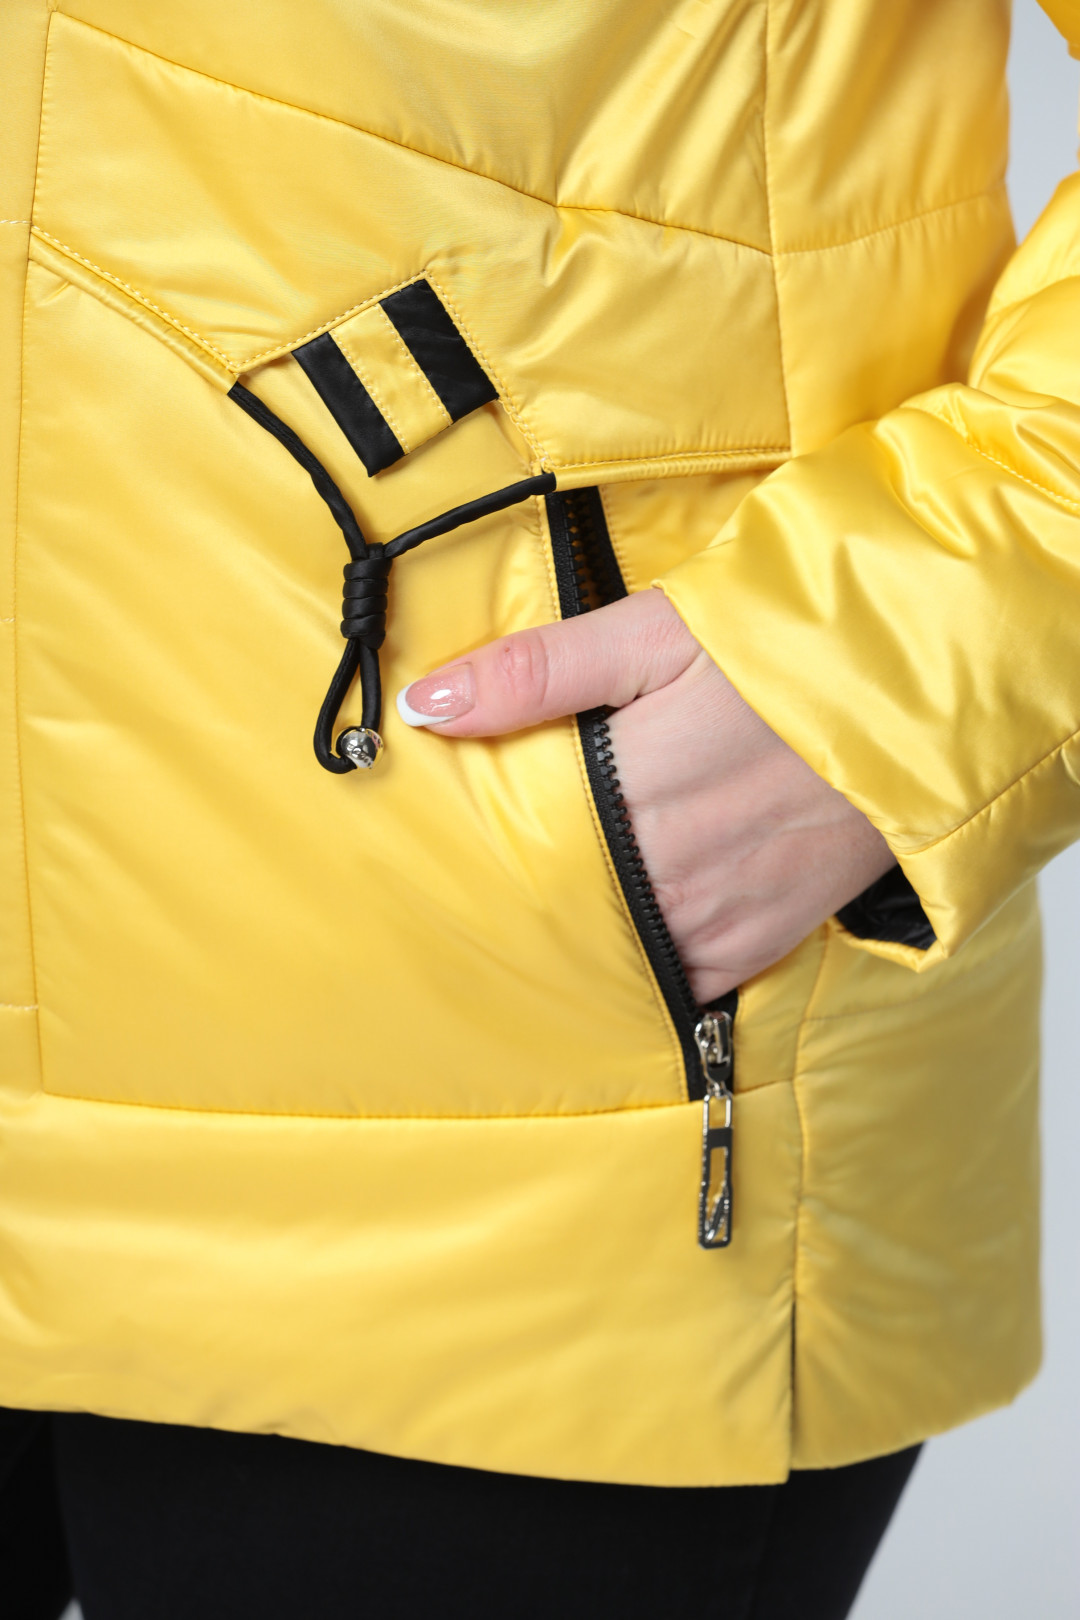 Куртка Shetti 2057 желтый